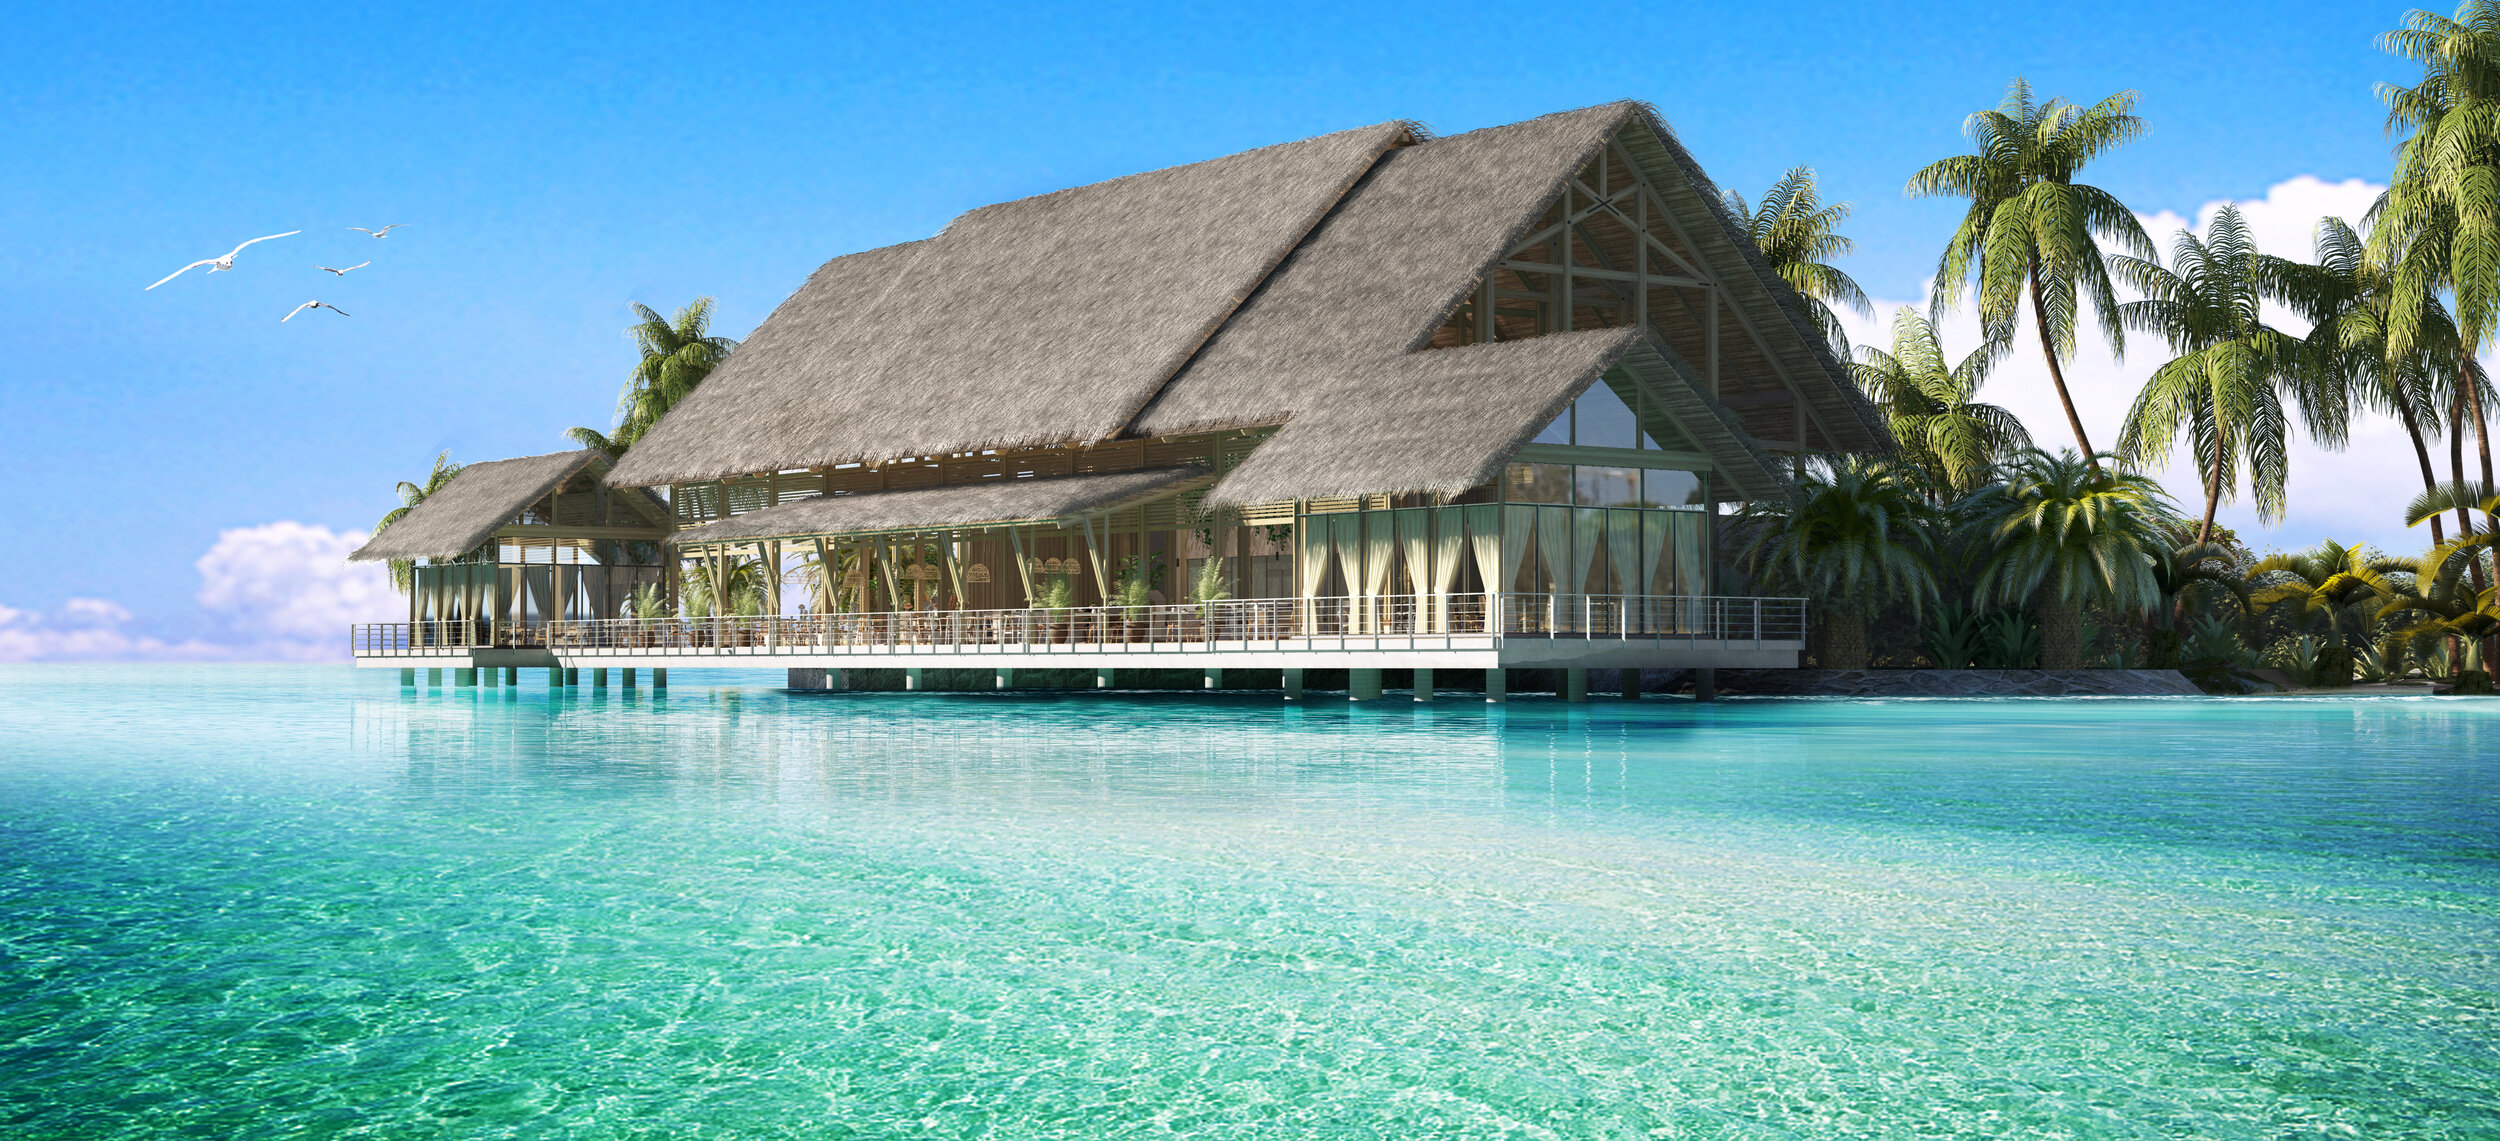 Hilton Maldives Amingiri - All Day Dining_Arch.jpg